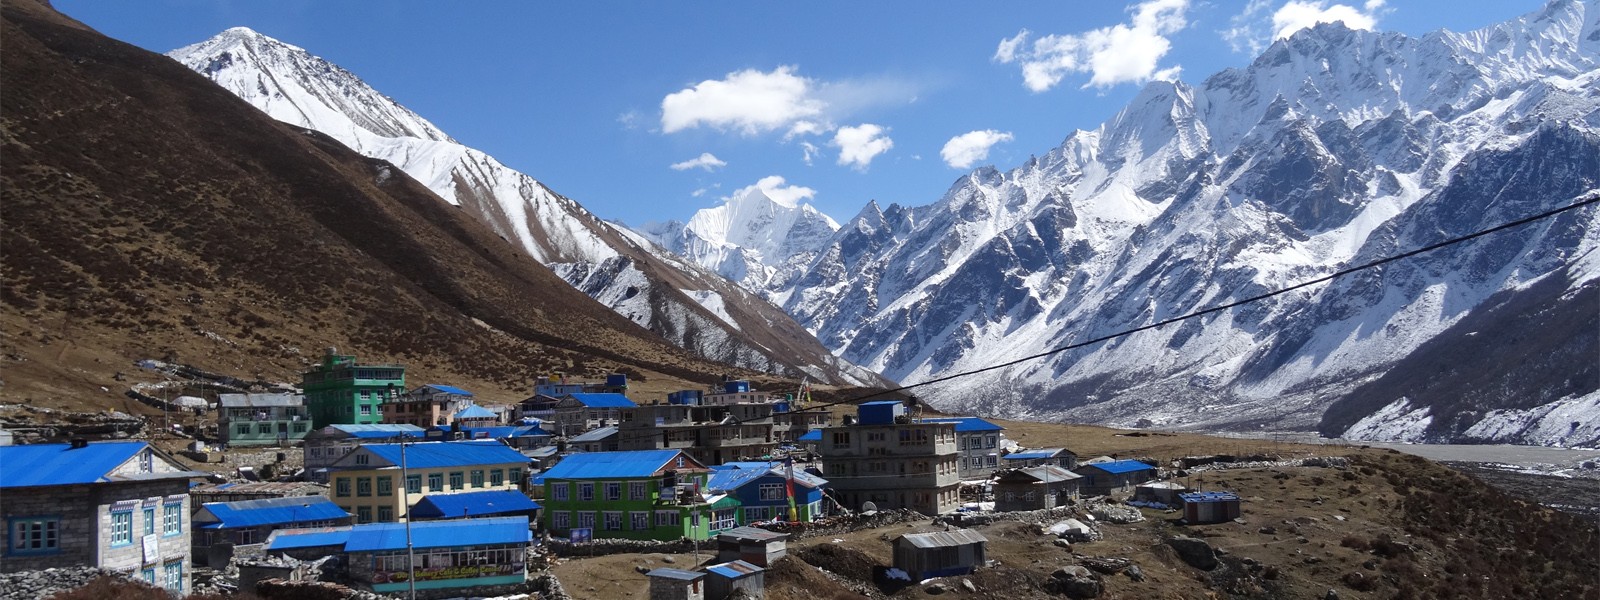 Mount Langtang Lirung Expedition- Langtang Region, Nepal